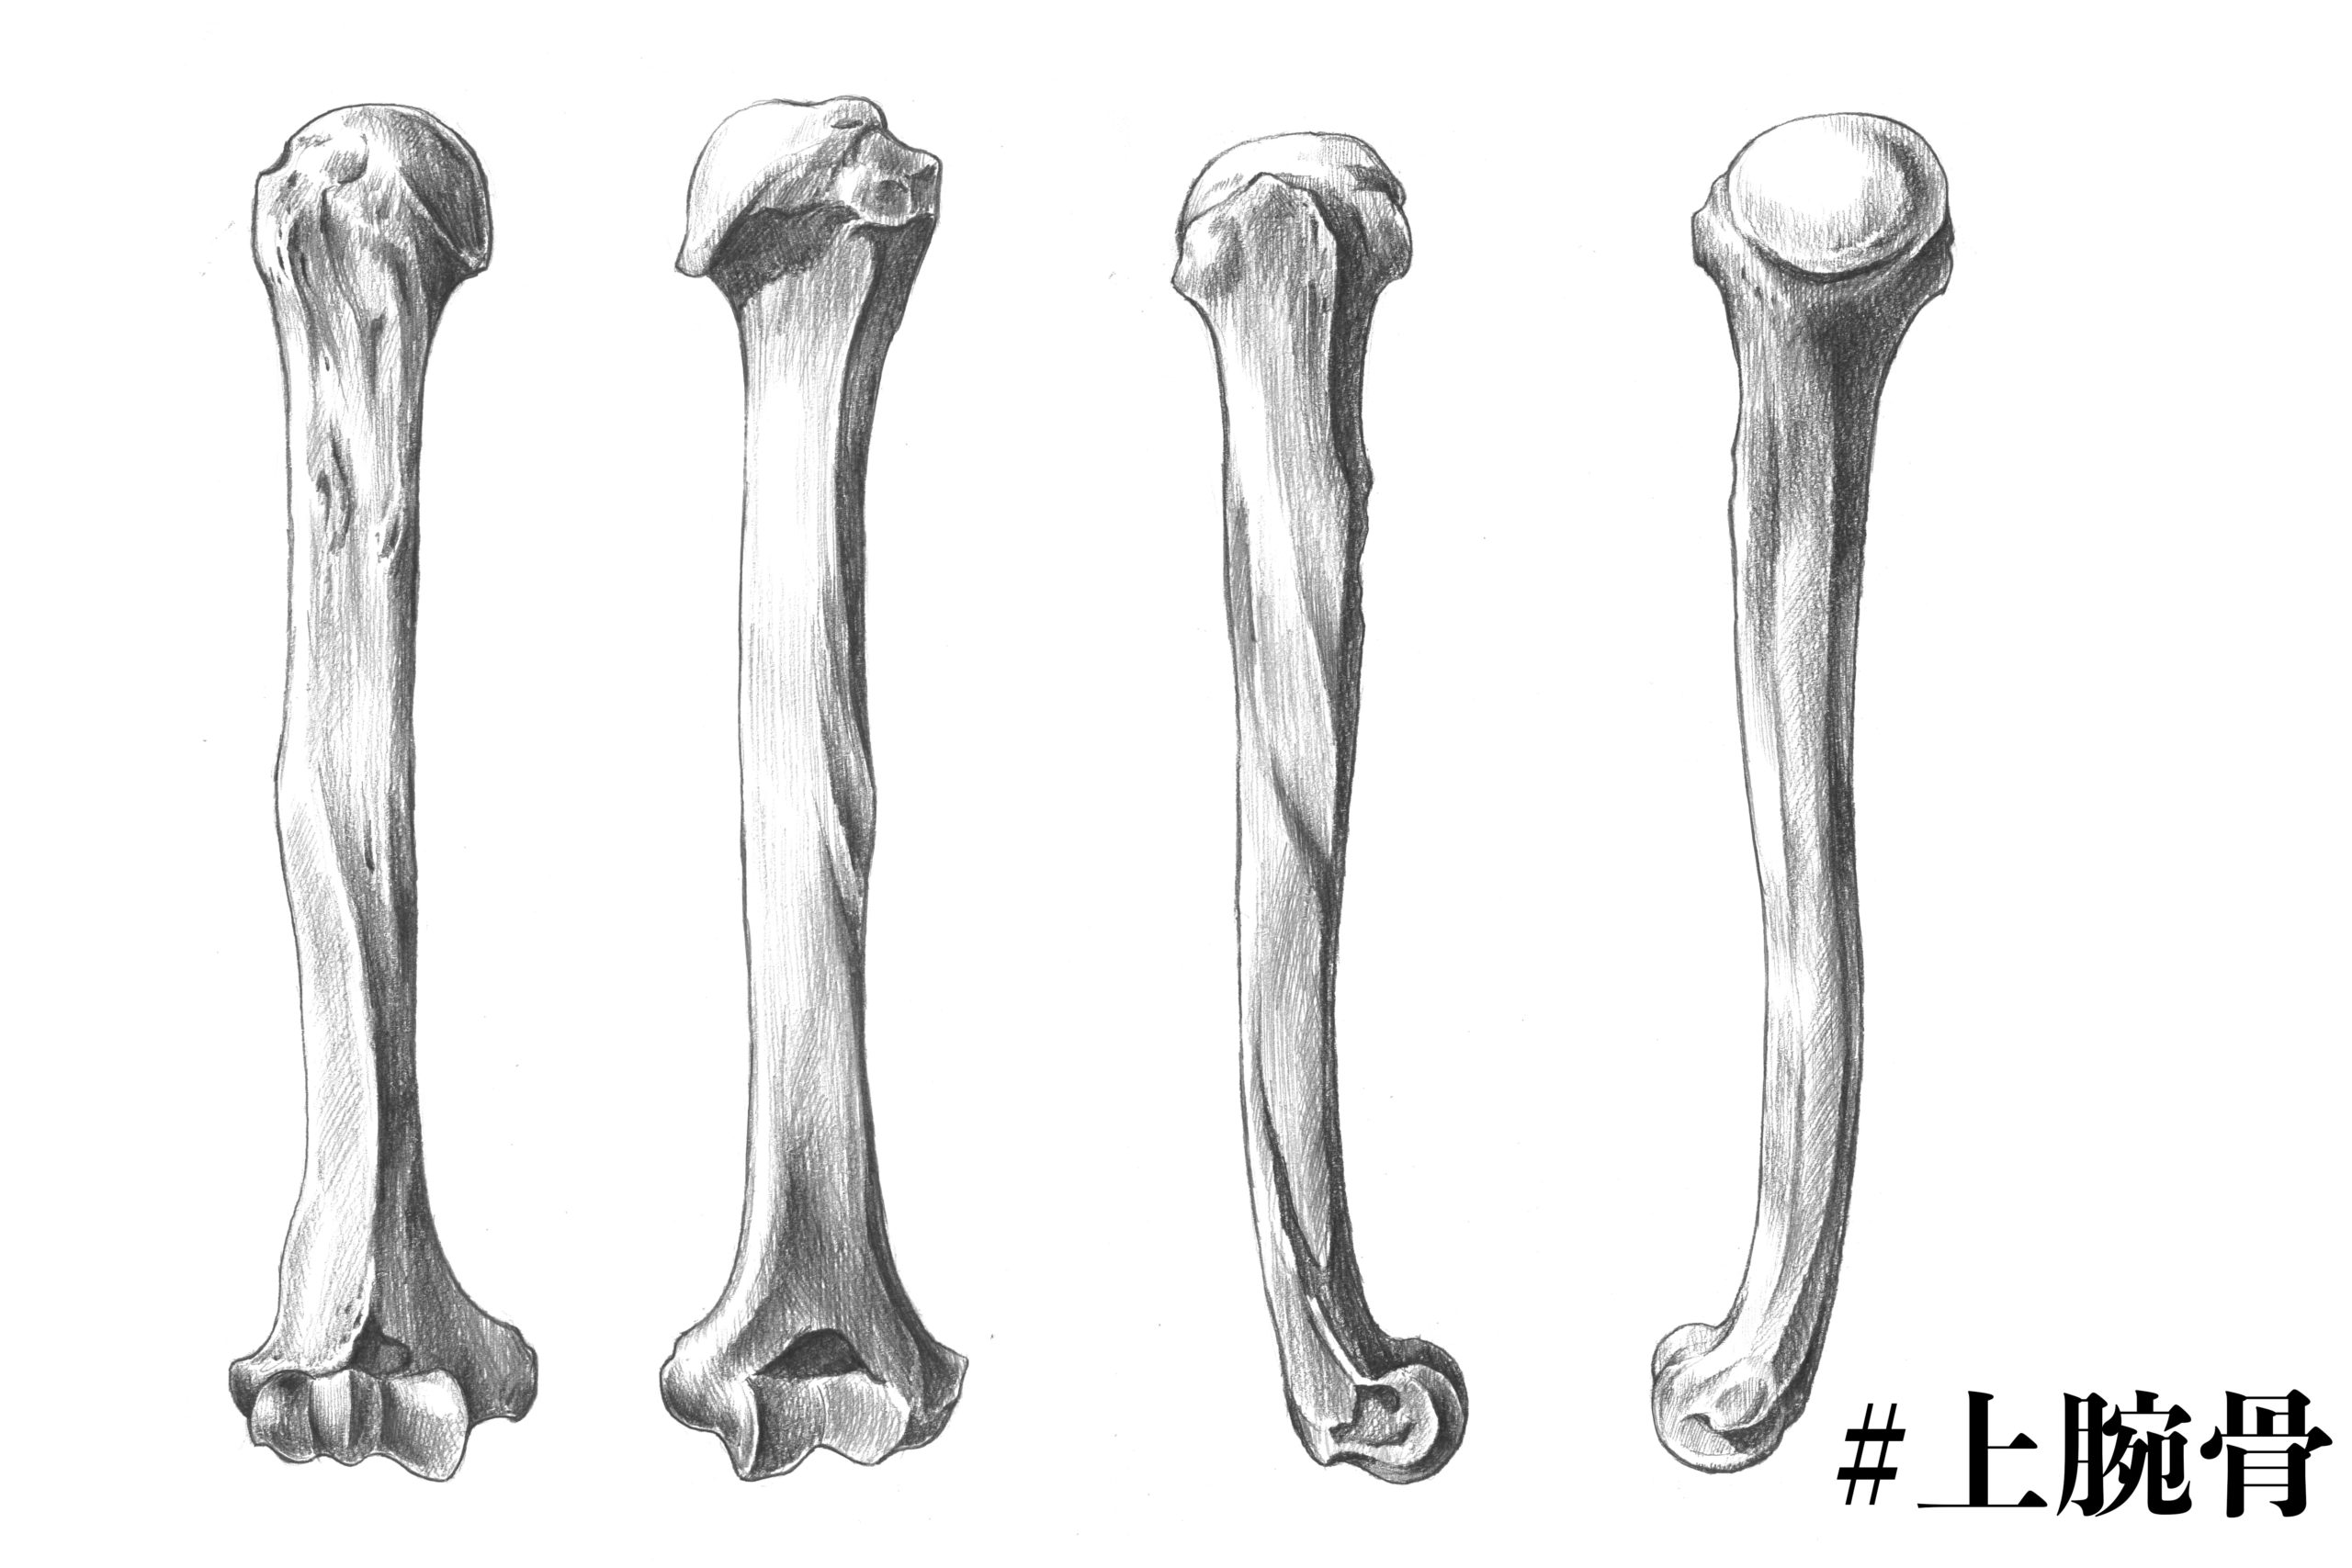 解剖学 8上腕骨とは 実際のスケッチを交えて解説 ナツヲカケル 兼業クリエイター雑記